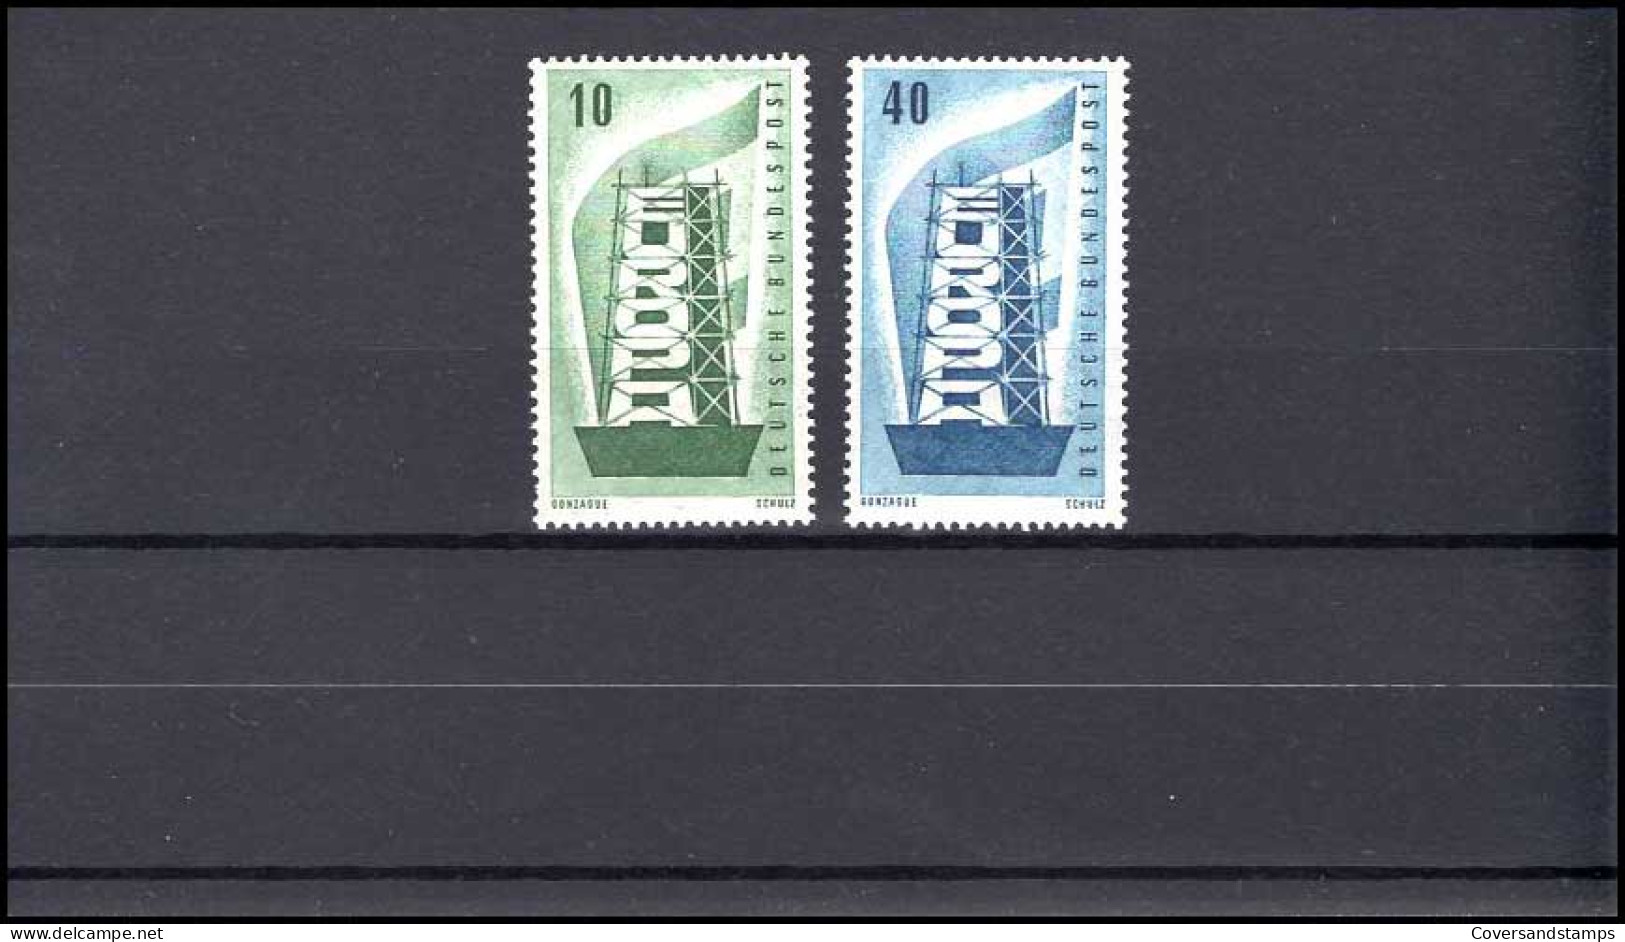  Bundespost MI 241/42 Europa CEPT   MNH / Postfrisch - Ungebraucht